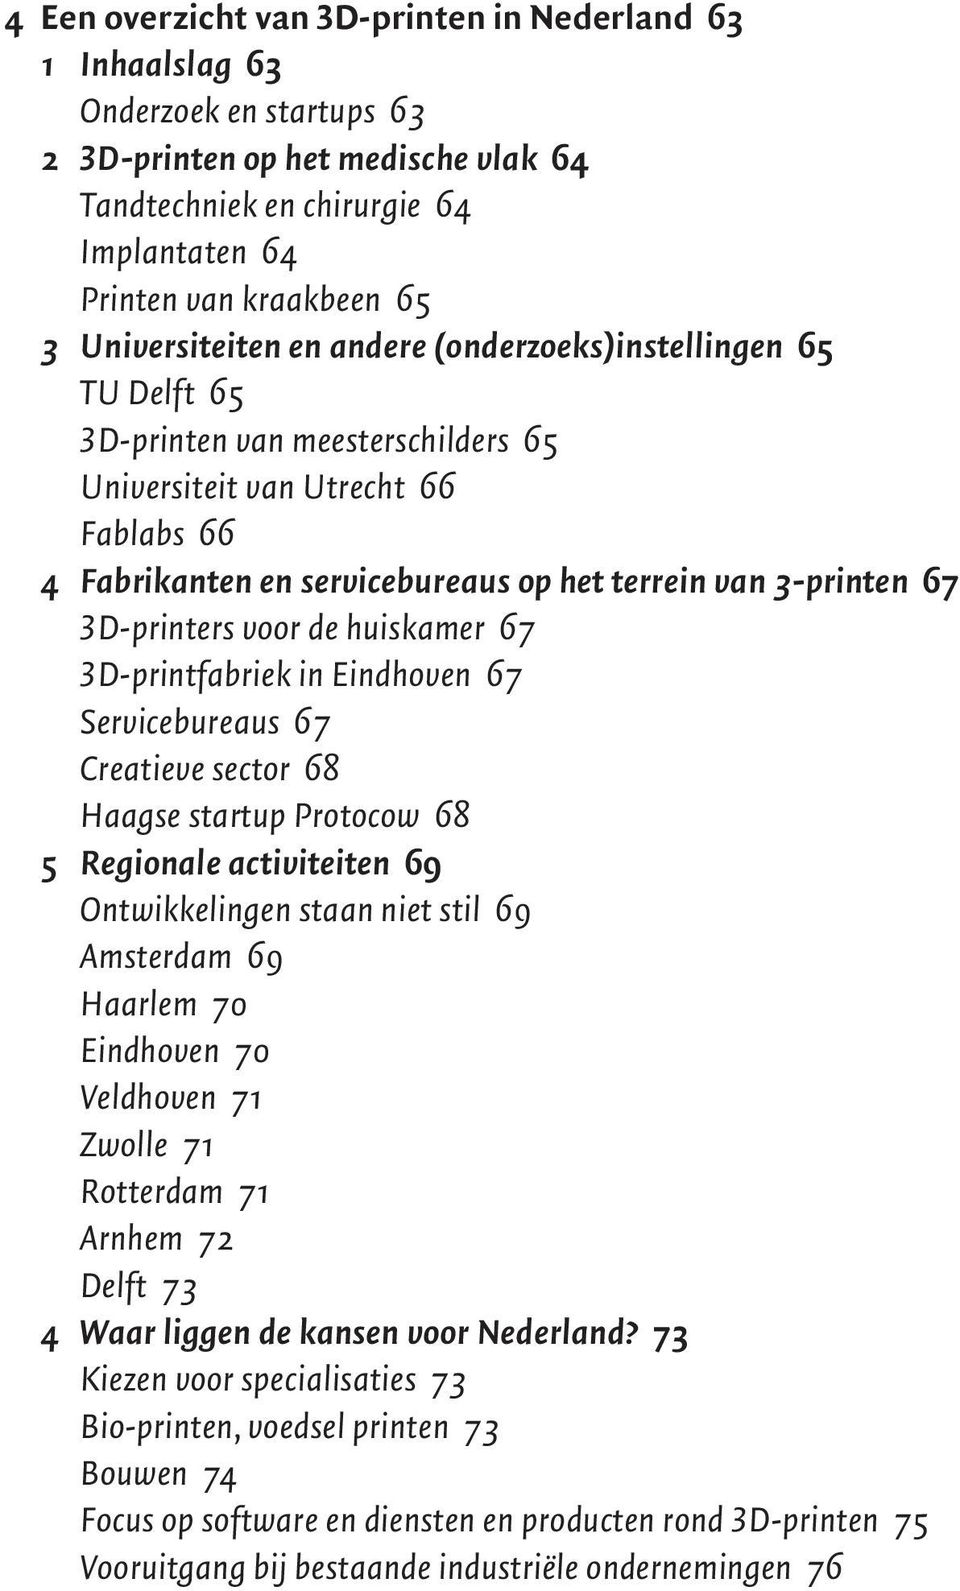 67 3D-printers voor de huiskamer 67 3D-printfabriek in Eindhoven 67 Servicebureaus 67 Creatieve sector 68 Haagse startup Protocow 68 5 Regionale activiteiten 69 Ontwikkelingen staan niet stil 69